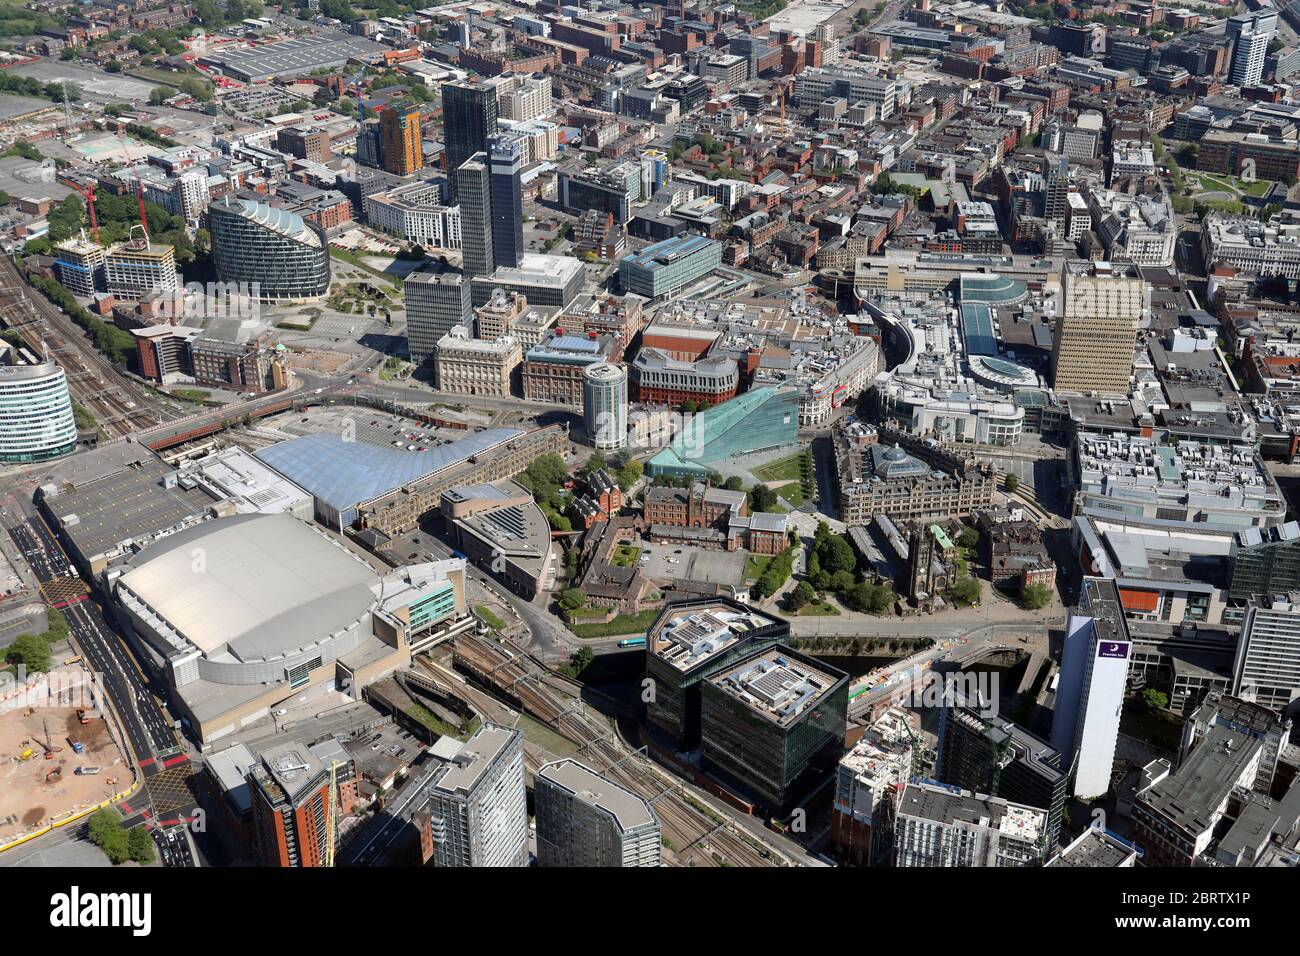 Vista aérea del centro de la ciudad de Manchester con el Arena, la estación Victoria, la catedral y el Museo Nacional de Fútbol, todos prominentes Foto de stock